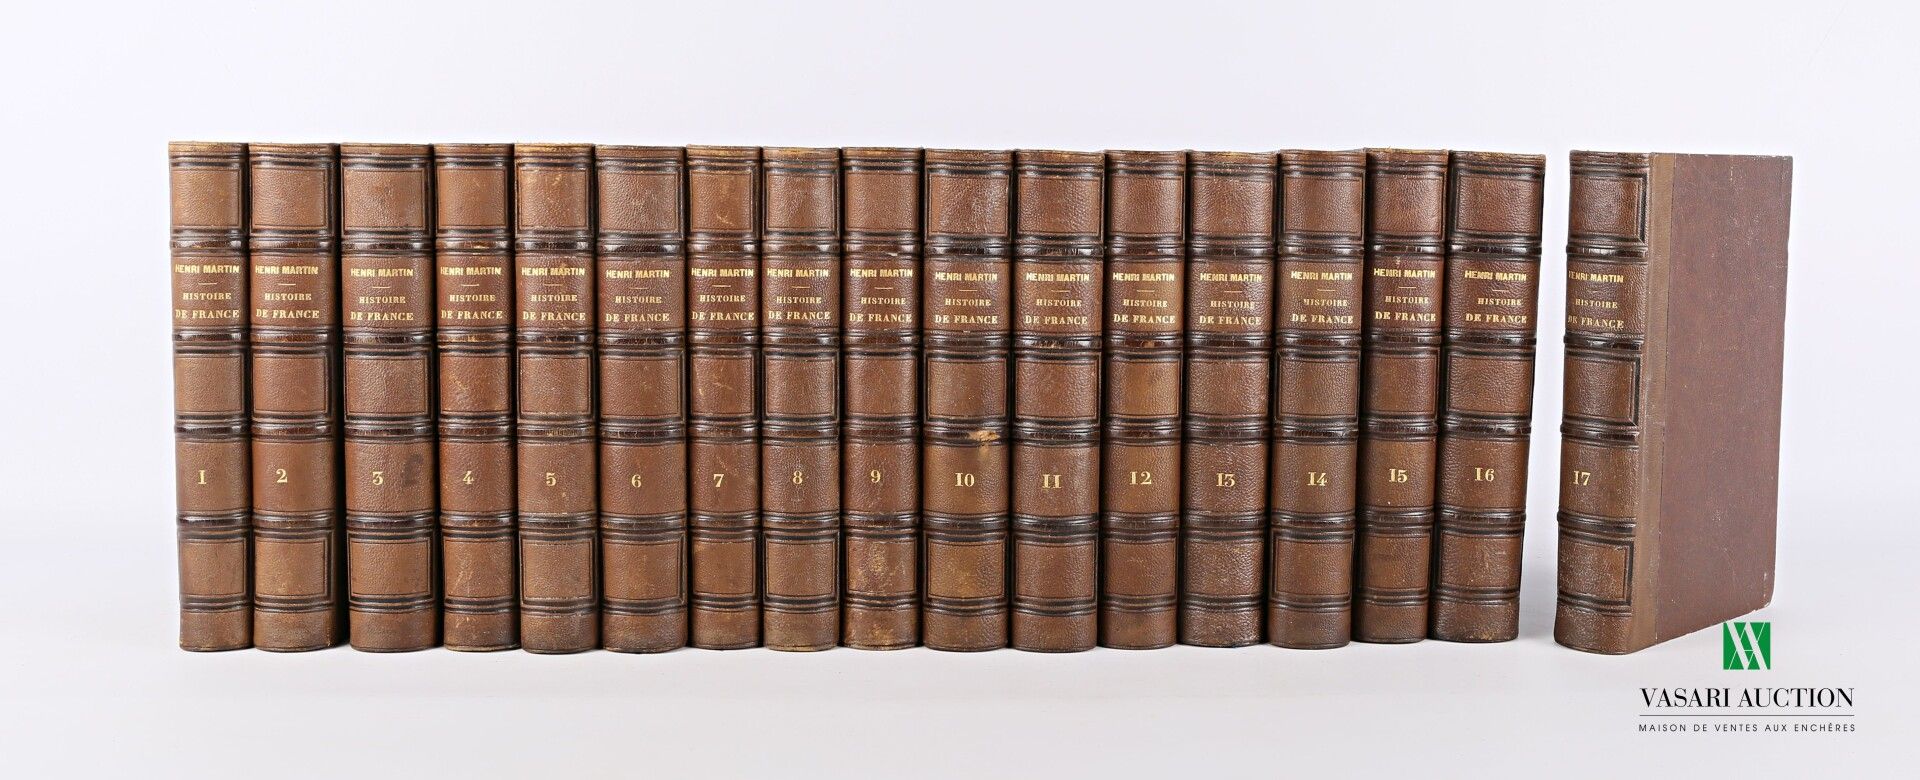 Null [史料]

马丁-亨利--法国史--第四版--巴黎，Furne，1857年至1860年--17卷，四开本--棕色懊恼装订--第17卷的分析表

(装订&hellip;